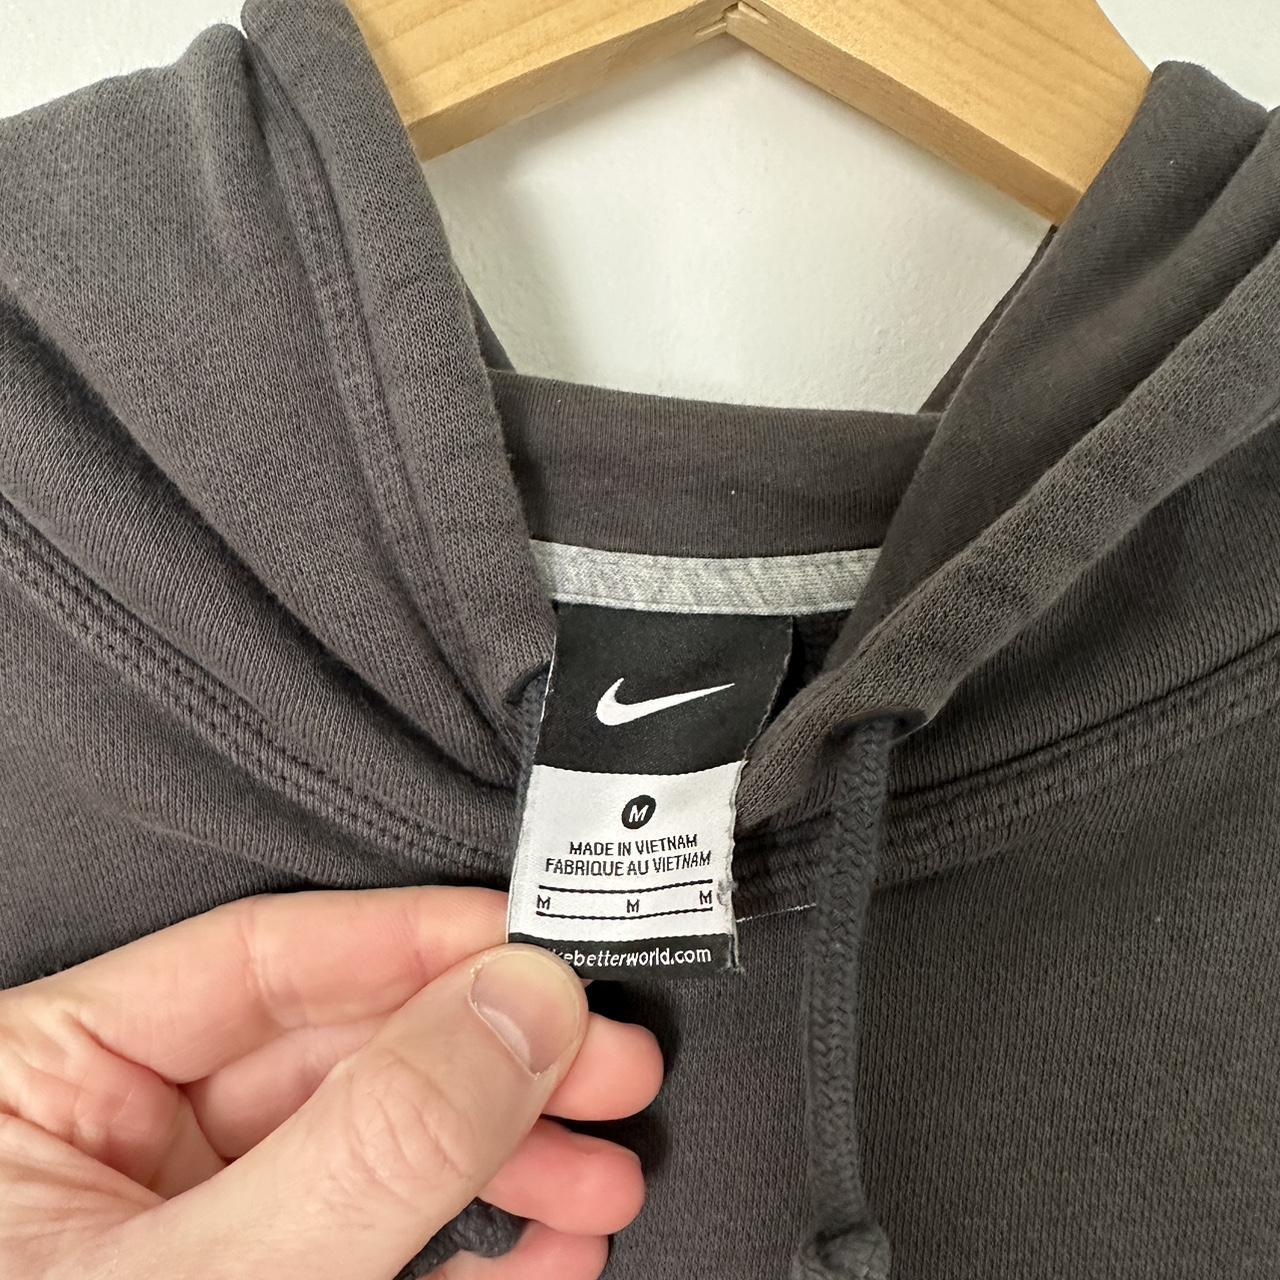 Nike Men's Black and Grey Hoodie | Depop